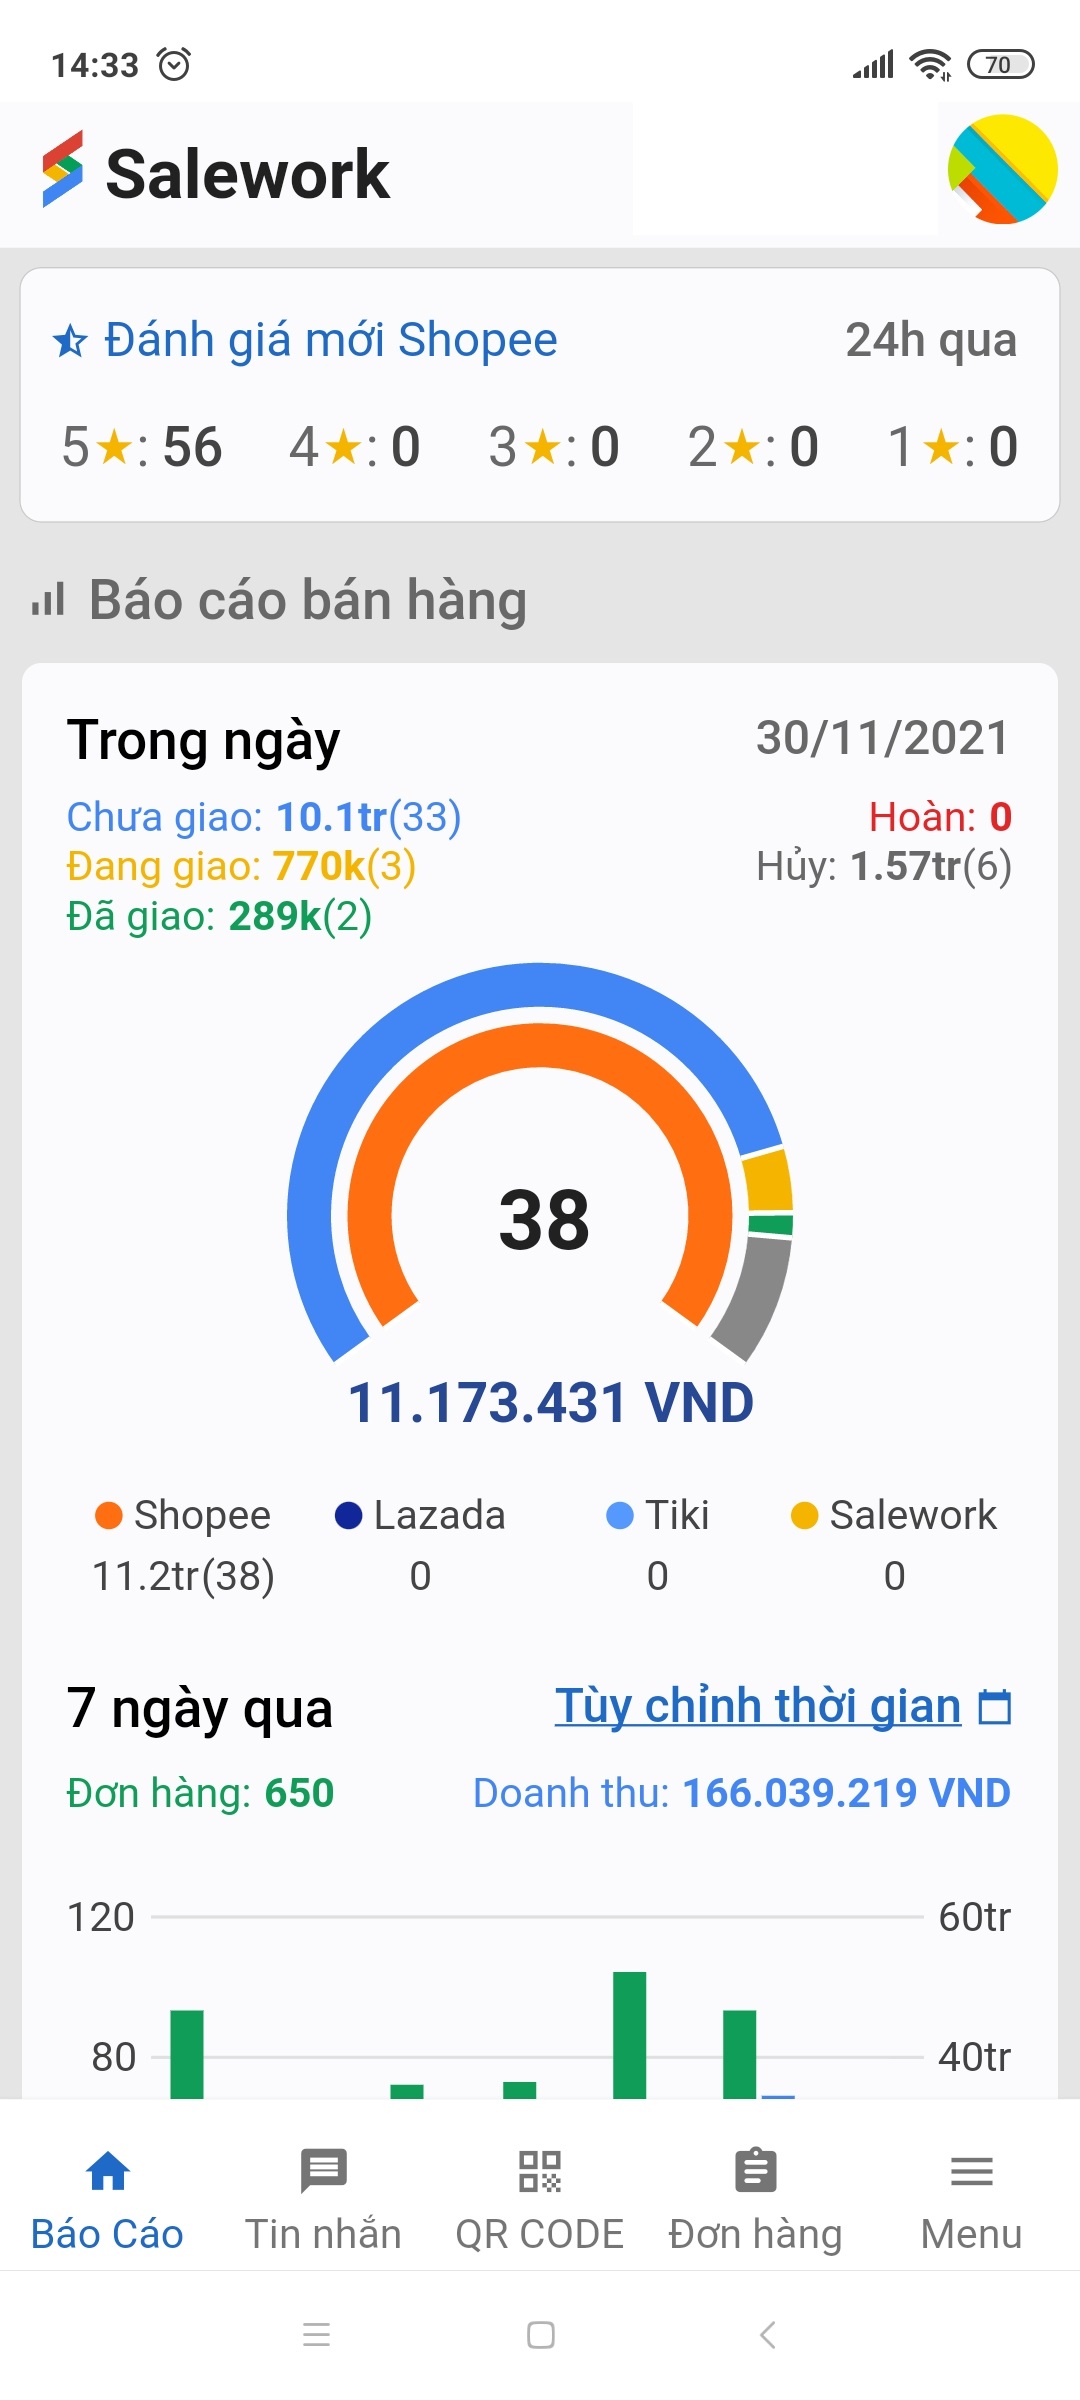 Salework app - Ứng dụng quản lý bán hàng đa kênh trên điện thoại tốt nhất tại Việt Nam - 31